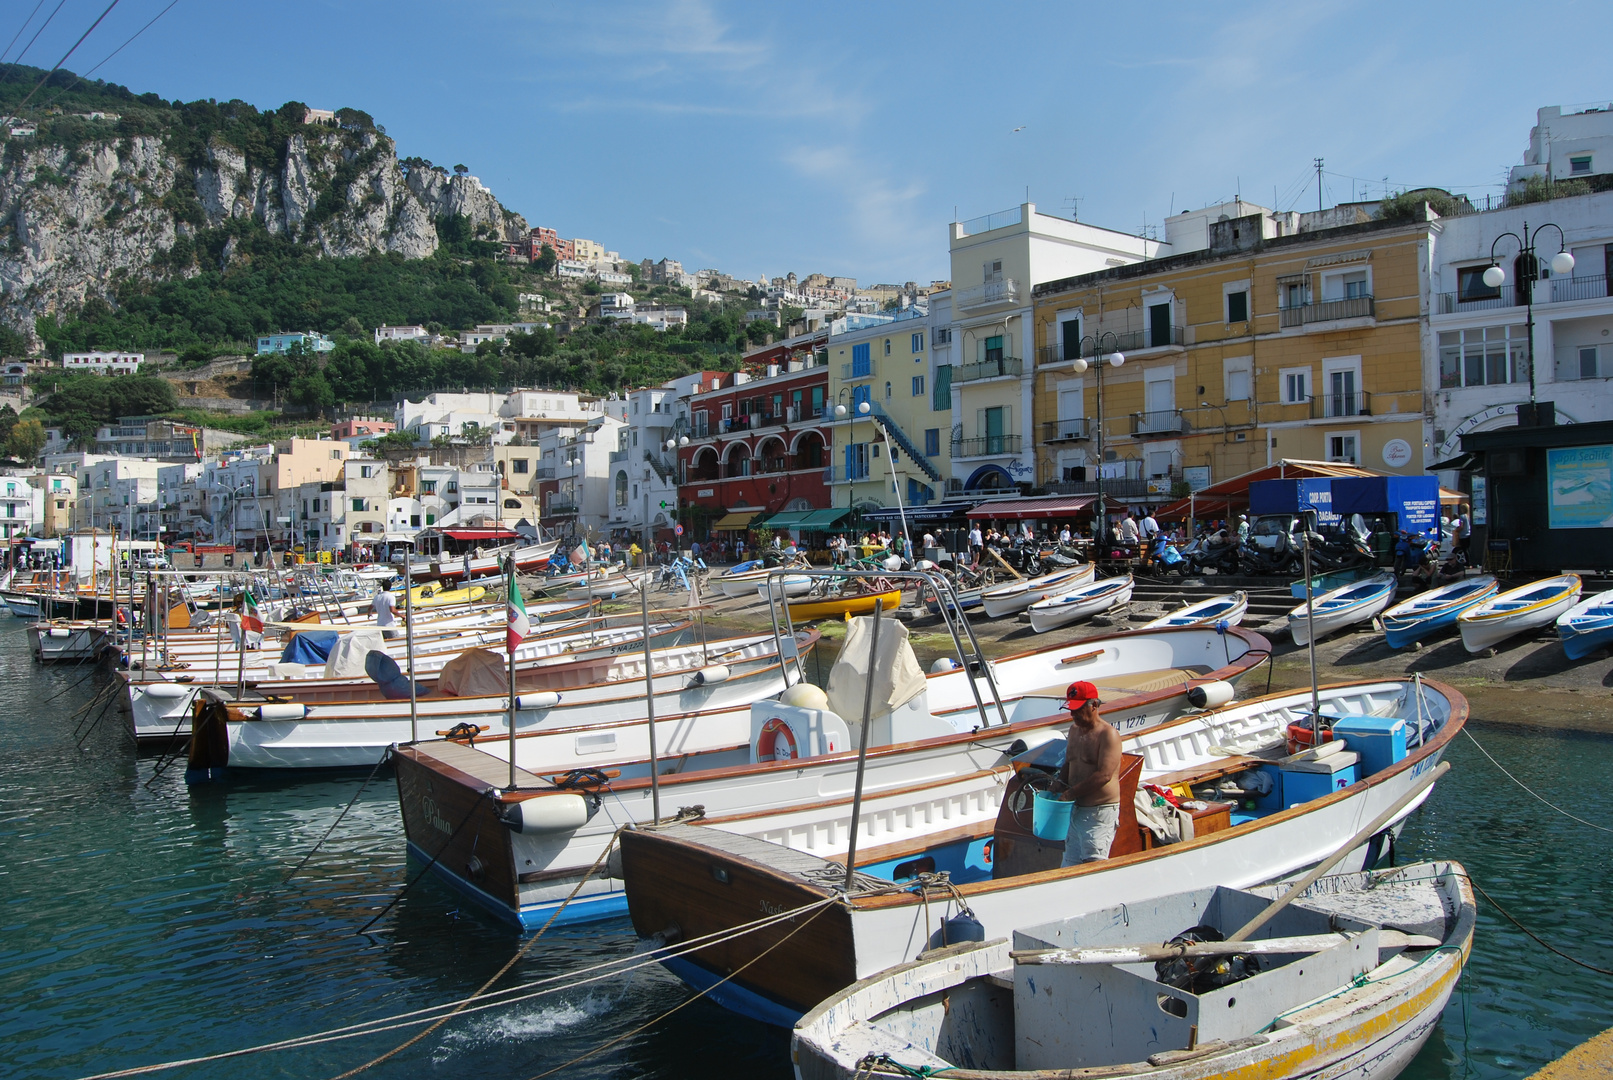 Hafen Insel Capri